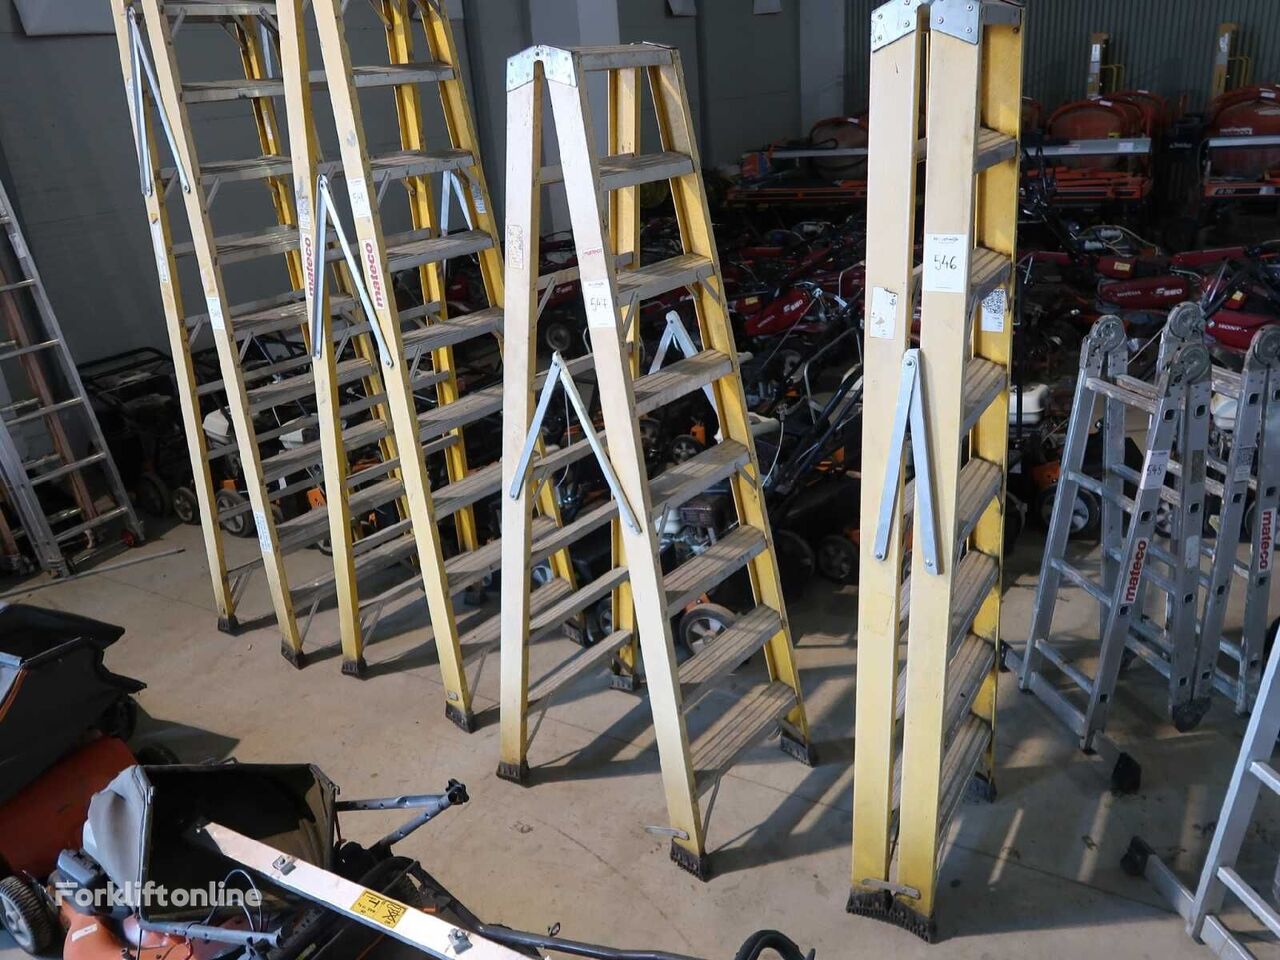 V6 - Fiberglass ladder - 2018 warehouse ladder